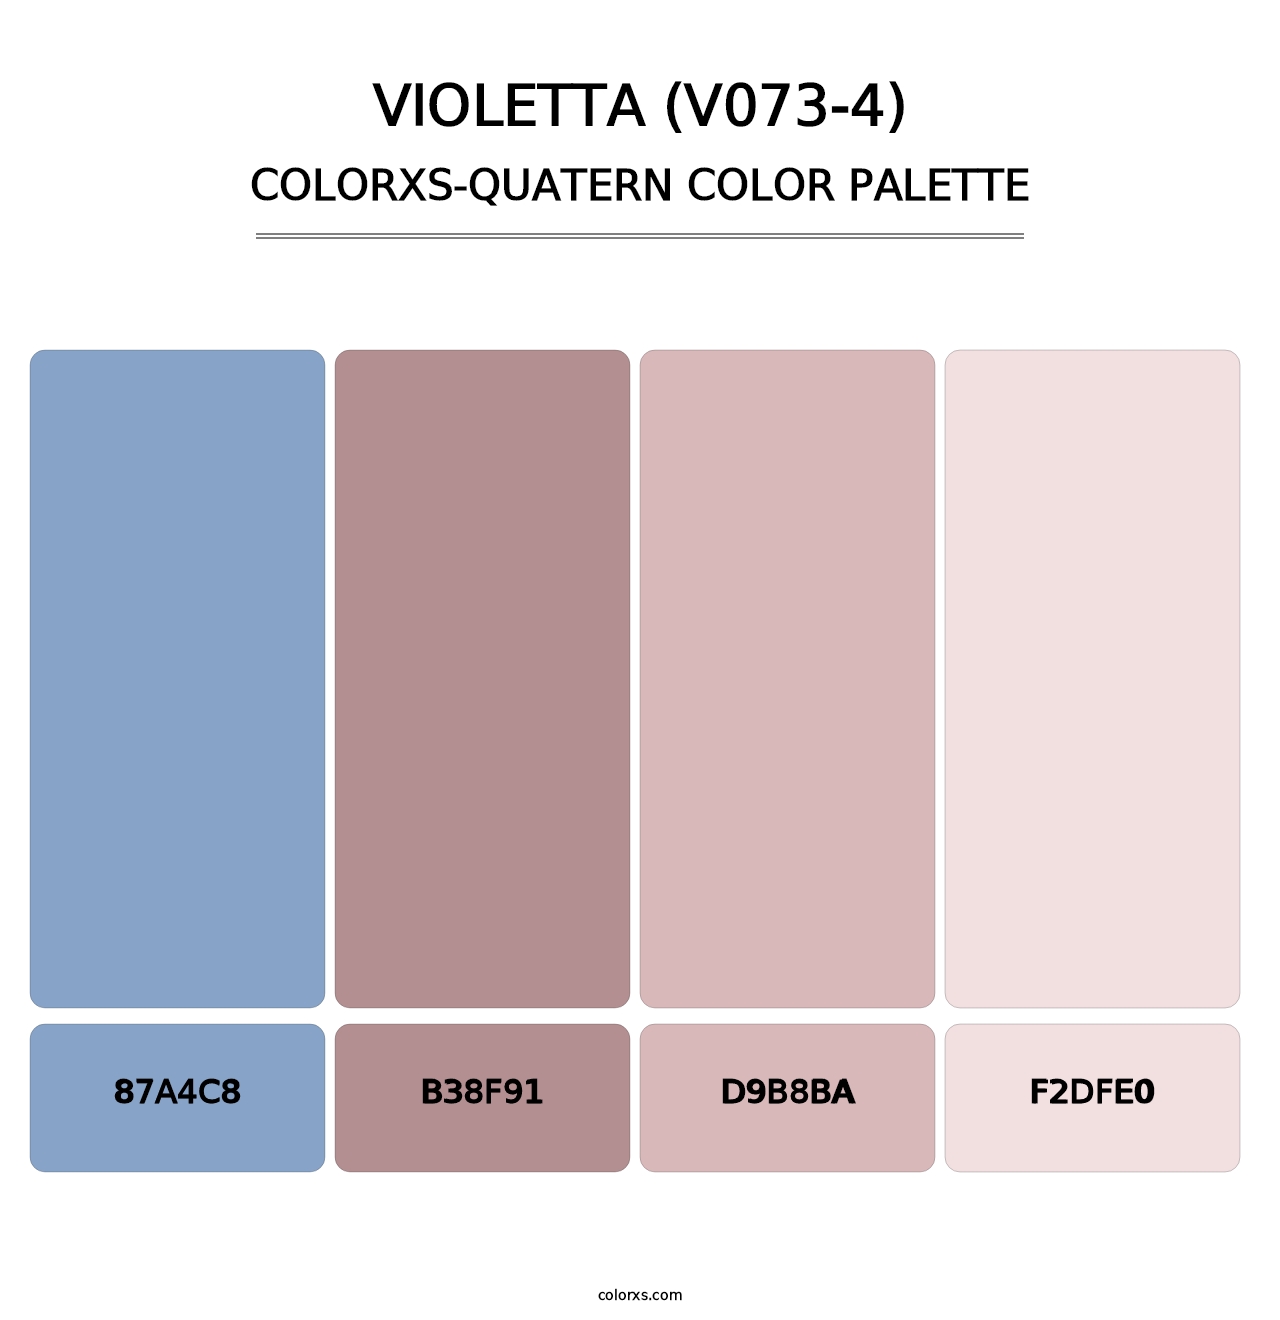 Violetta (V073-4) - Colorxs Quatern Palette